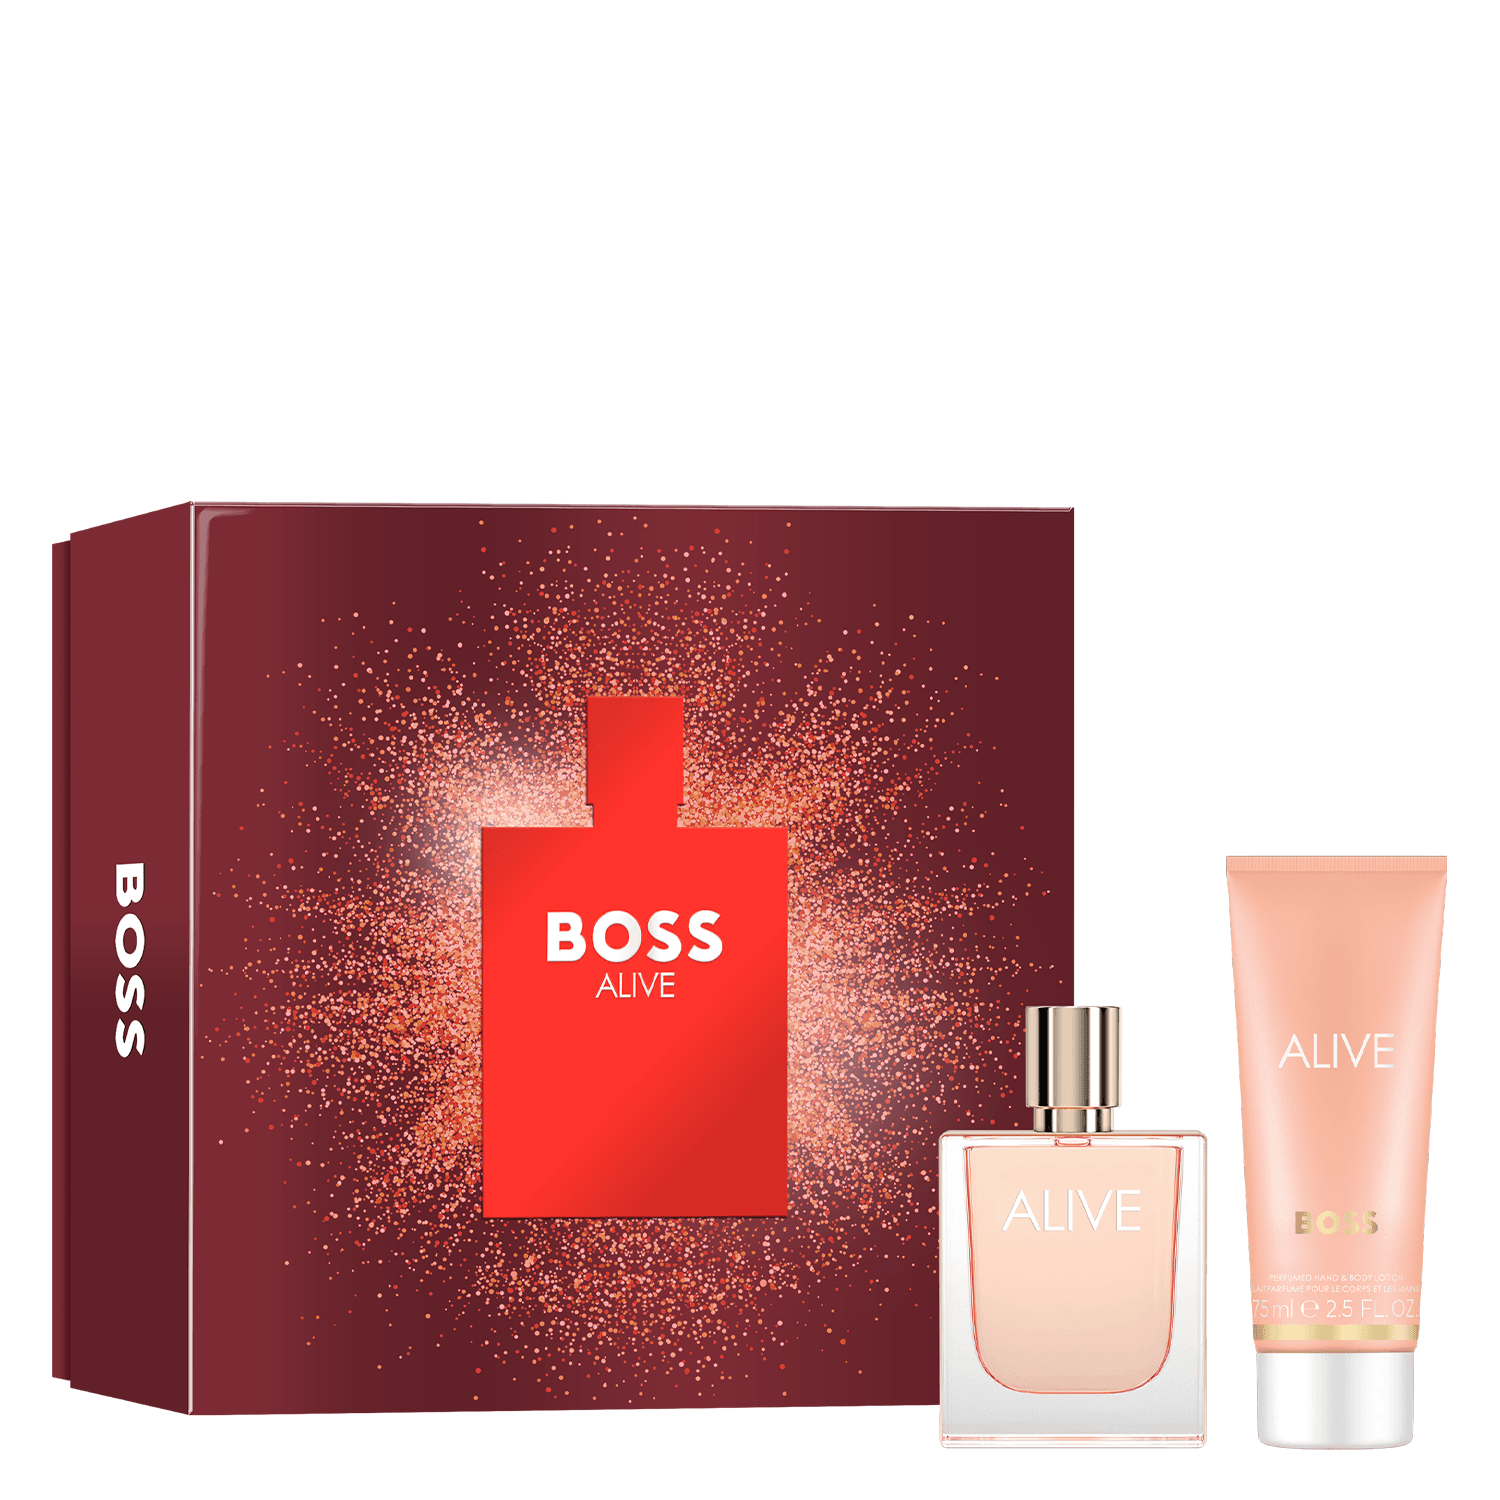 Boss Alive - Eau de Parfum & Body Lotion